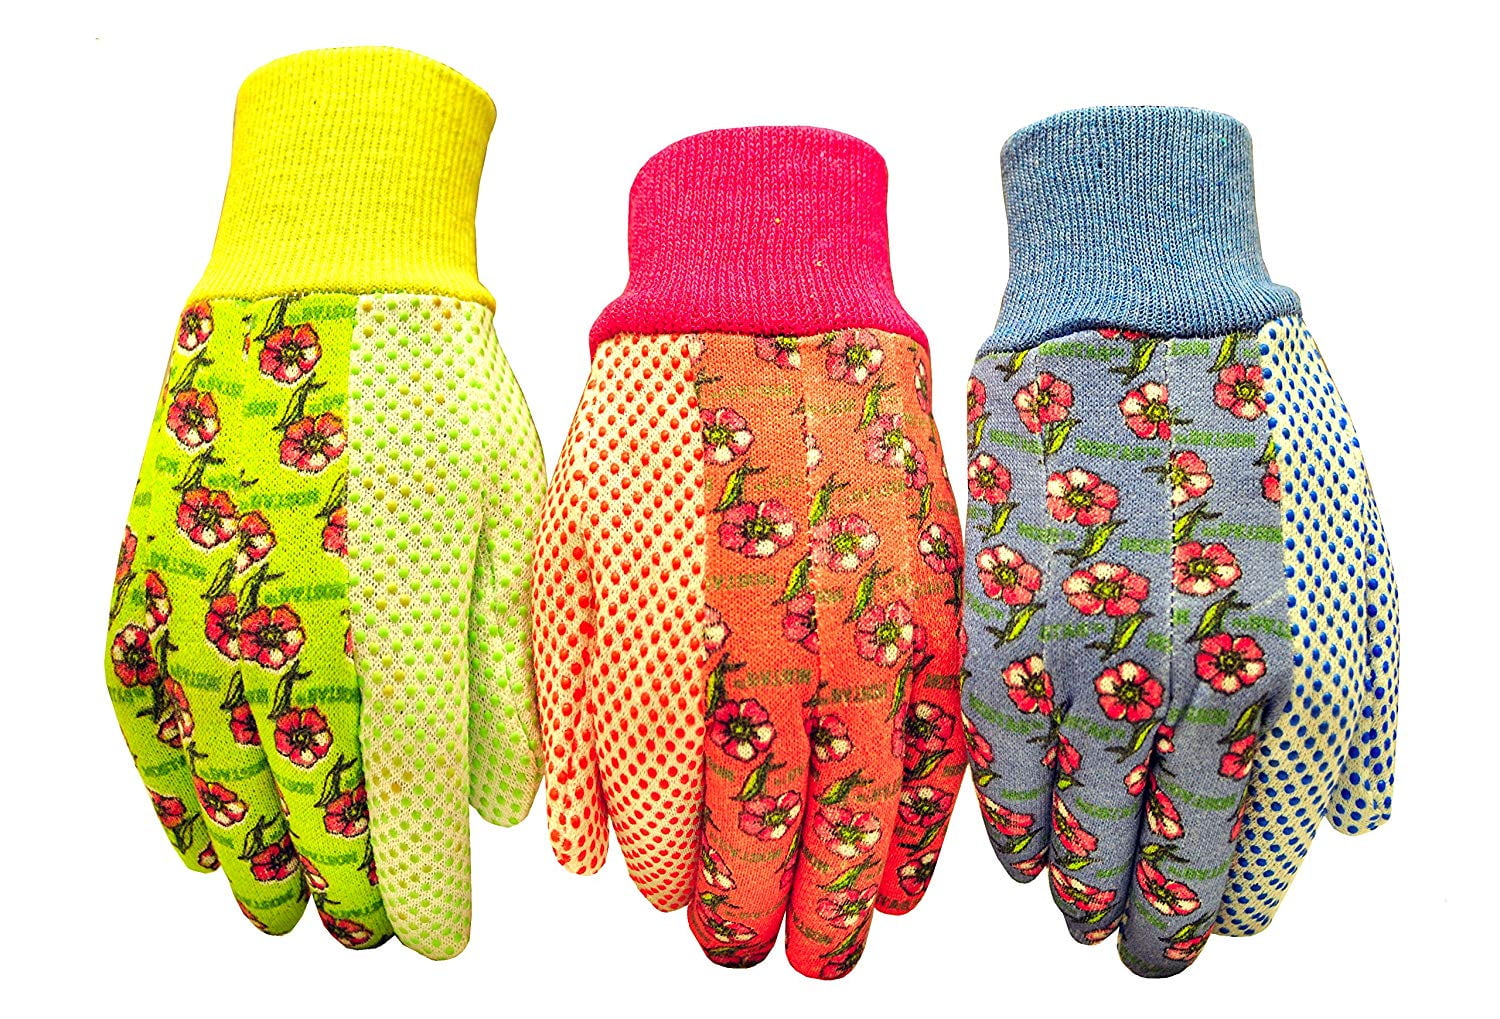 Ladies Floral Gardening Gloves Light Duty Indoor & Outdoor Working Cotton Gloves 